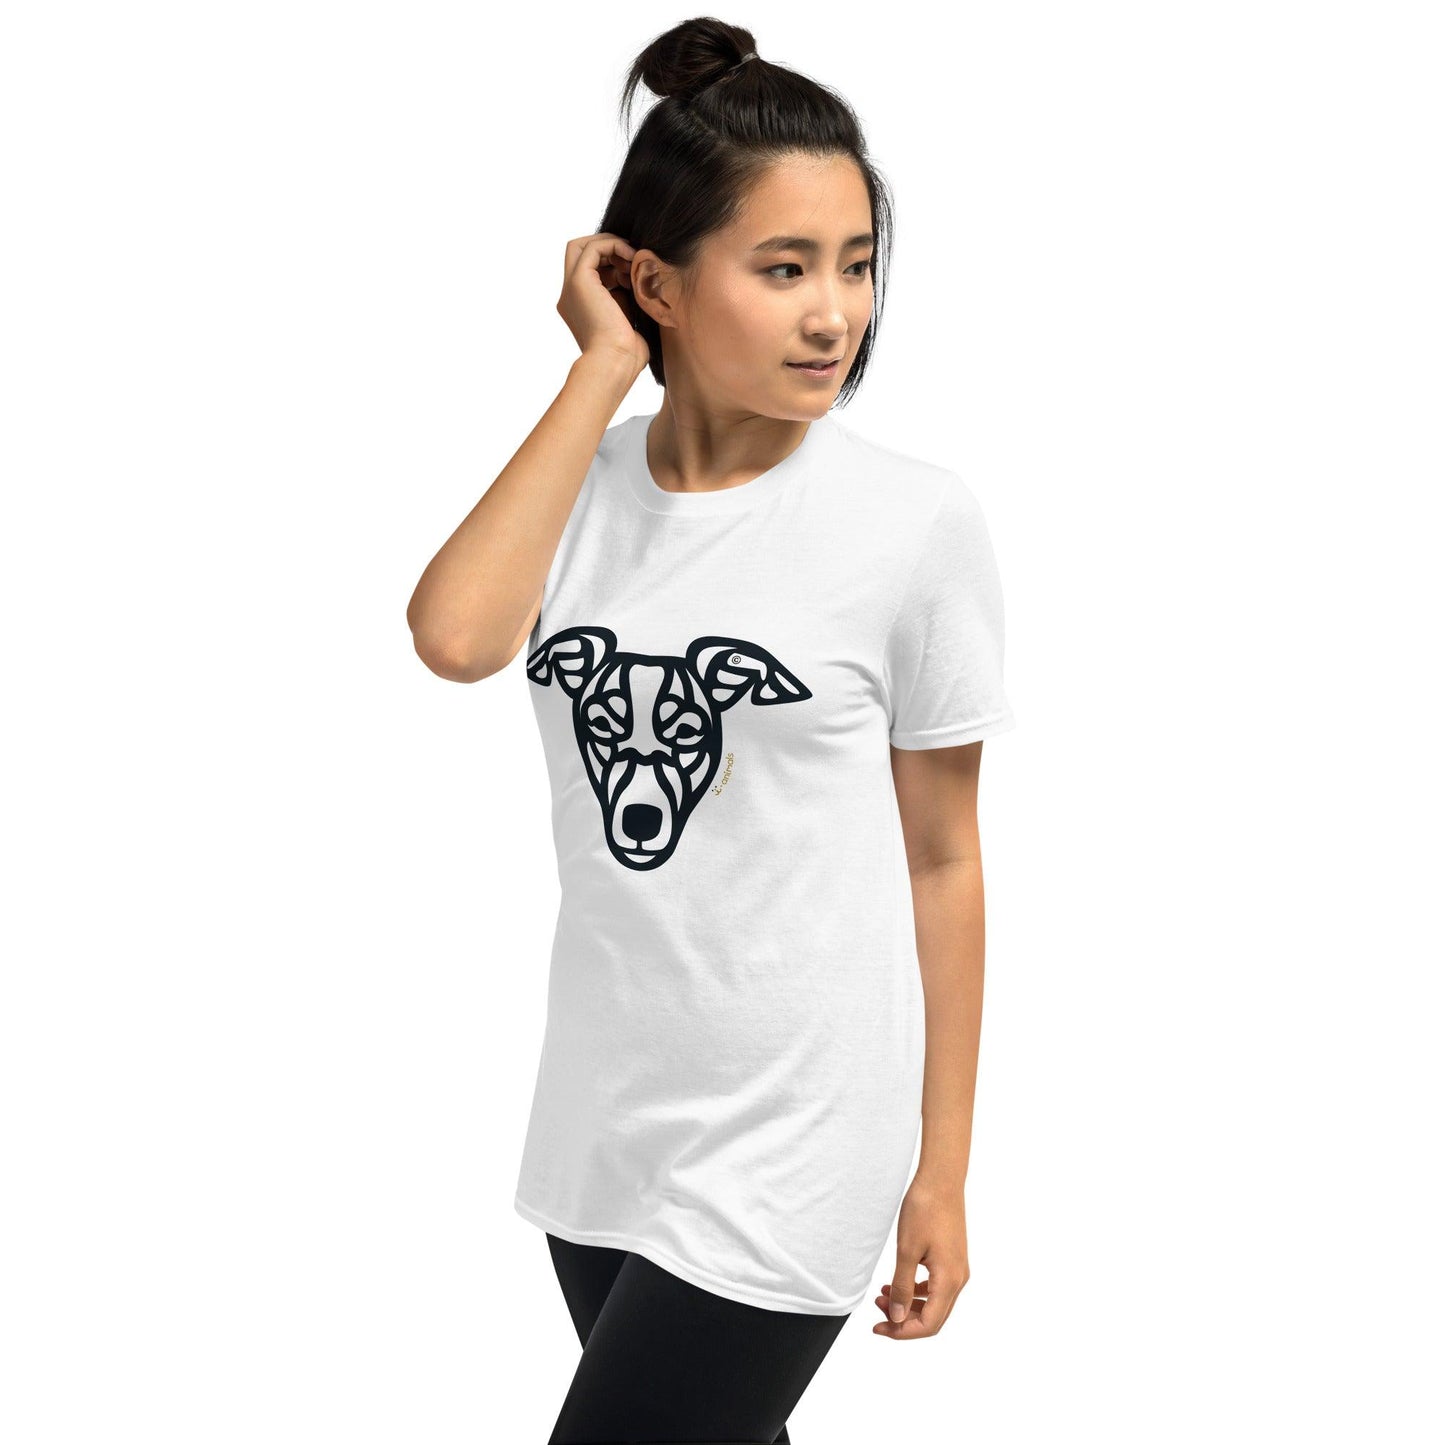 Camiseta unissex de manga curta - Whippet - Tribal - Cores Claras i-animals